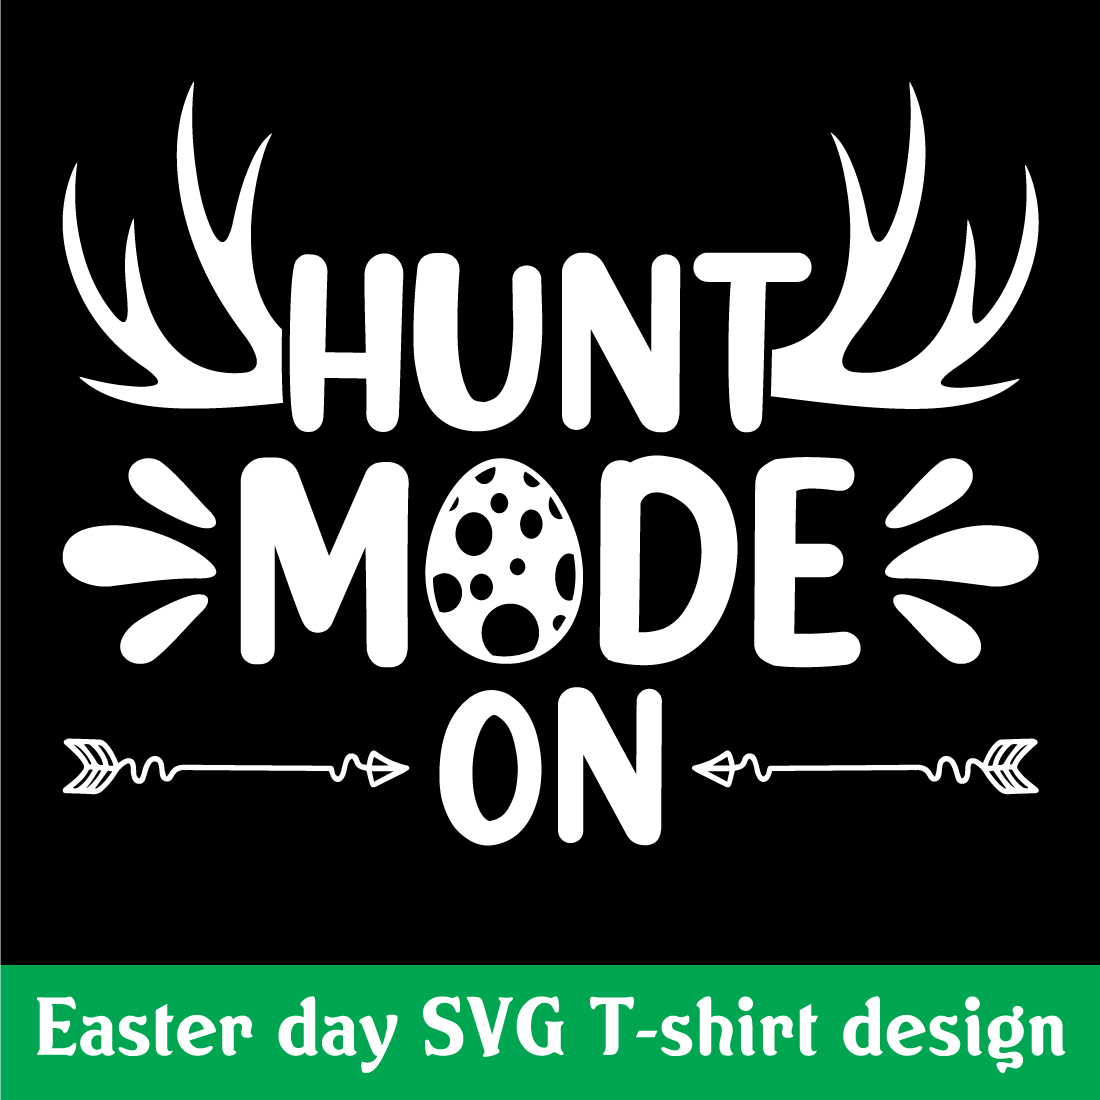 Hunt mode on SVG T-shirt design preview image.